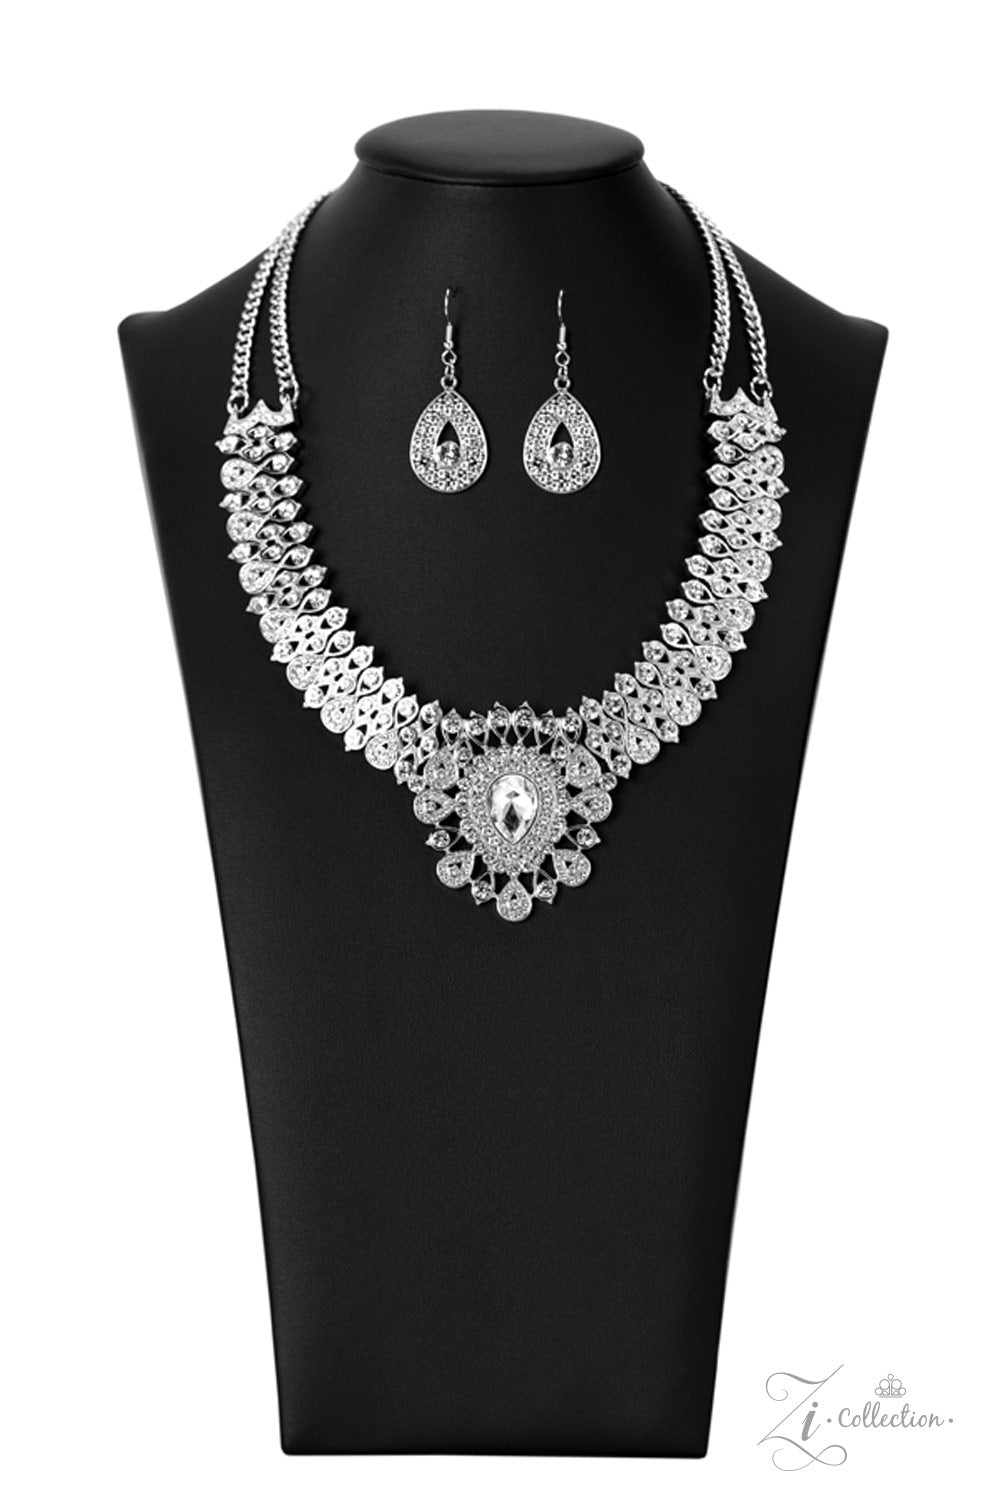 Paparazzi Accessories - Exquisite - Zi Collection Necklace Set